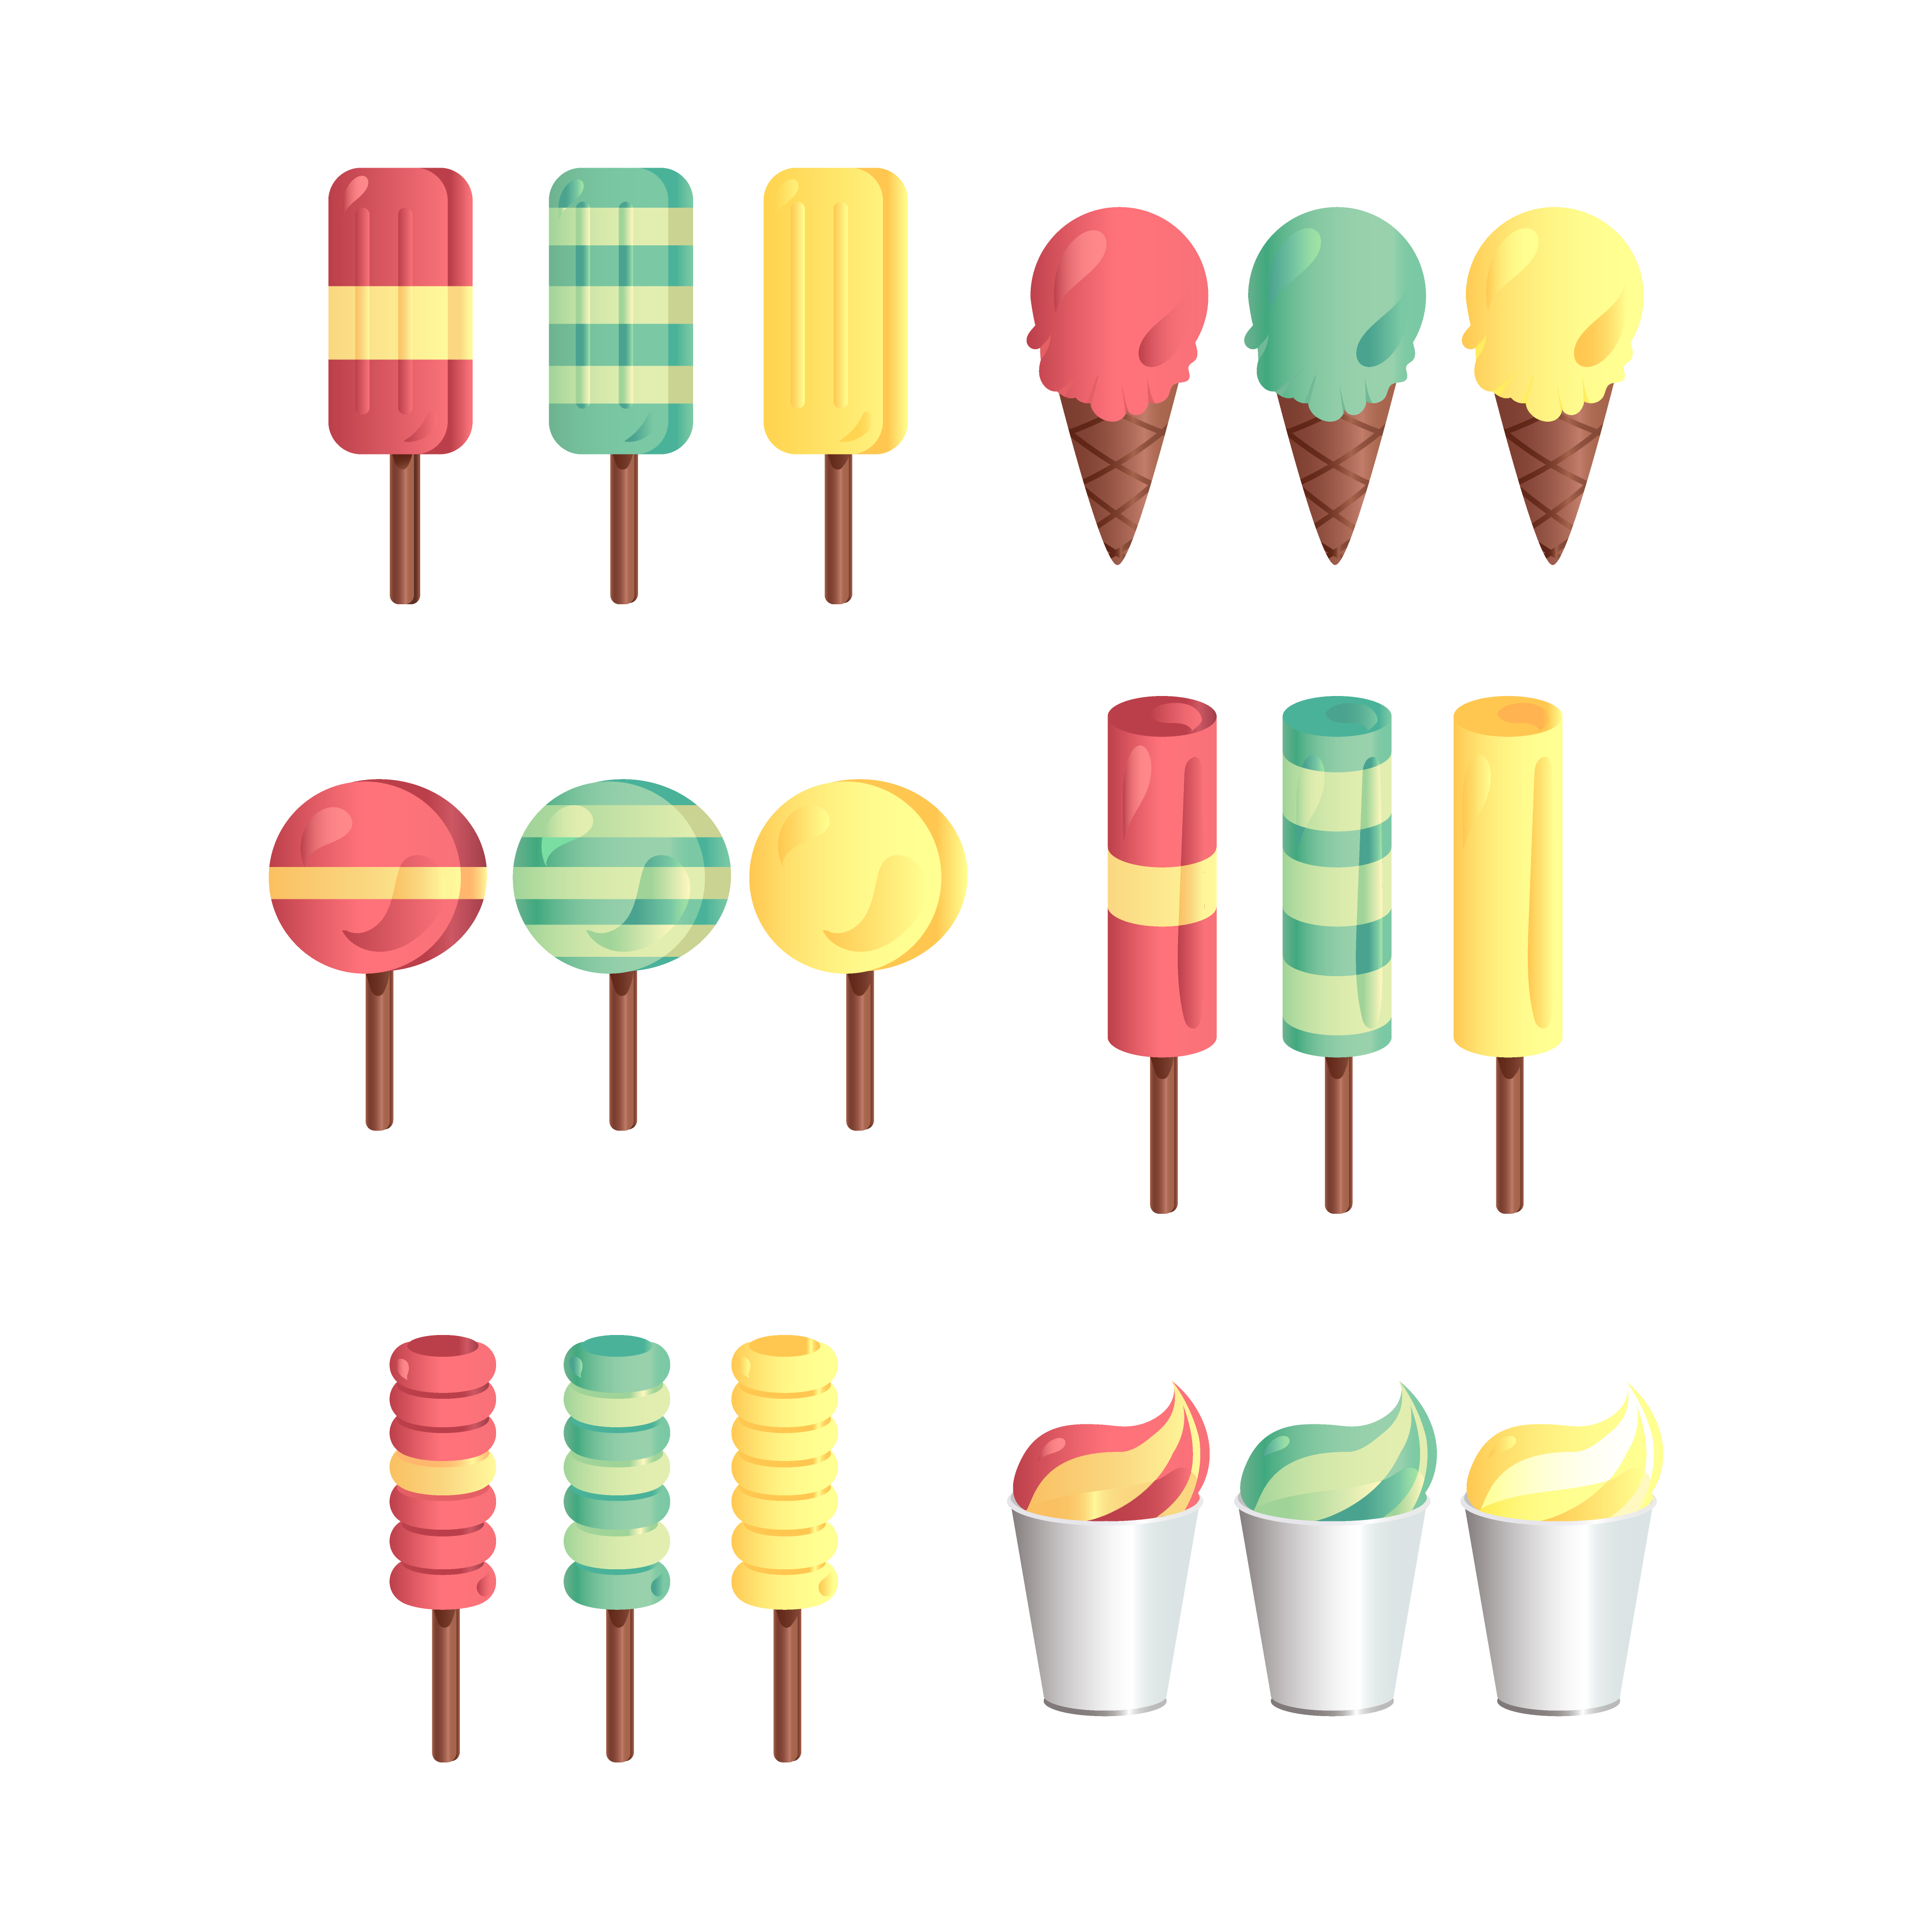 Flat icing. Мороженое разные цвета задание. Мороженое шаблон для английского по теме цвета. Ice Cream 3 Color.